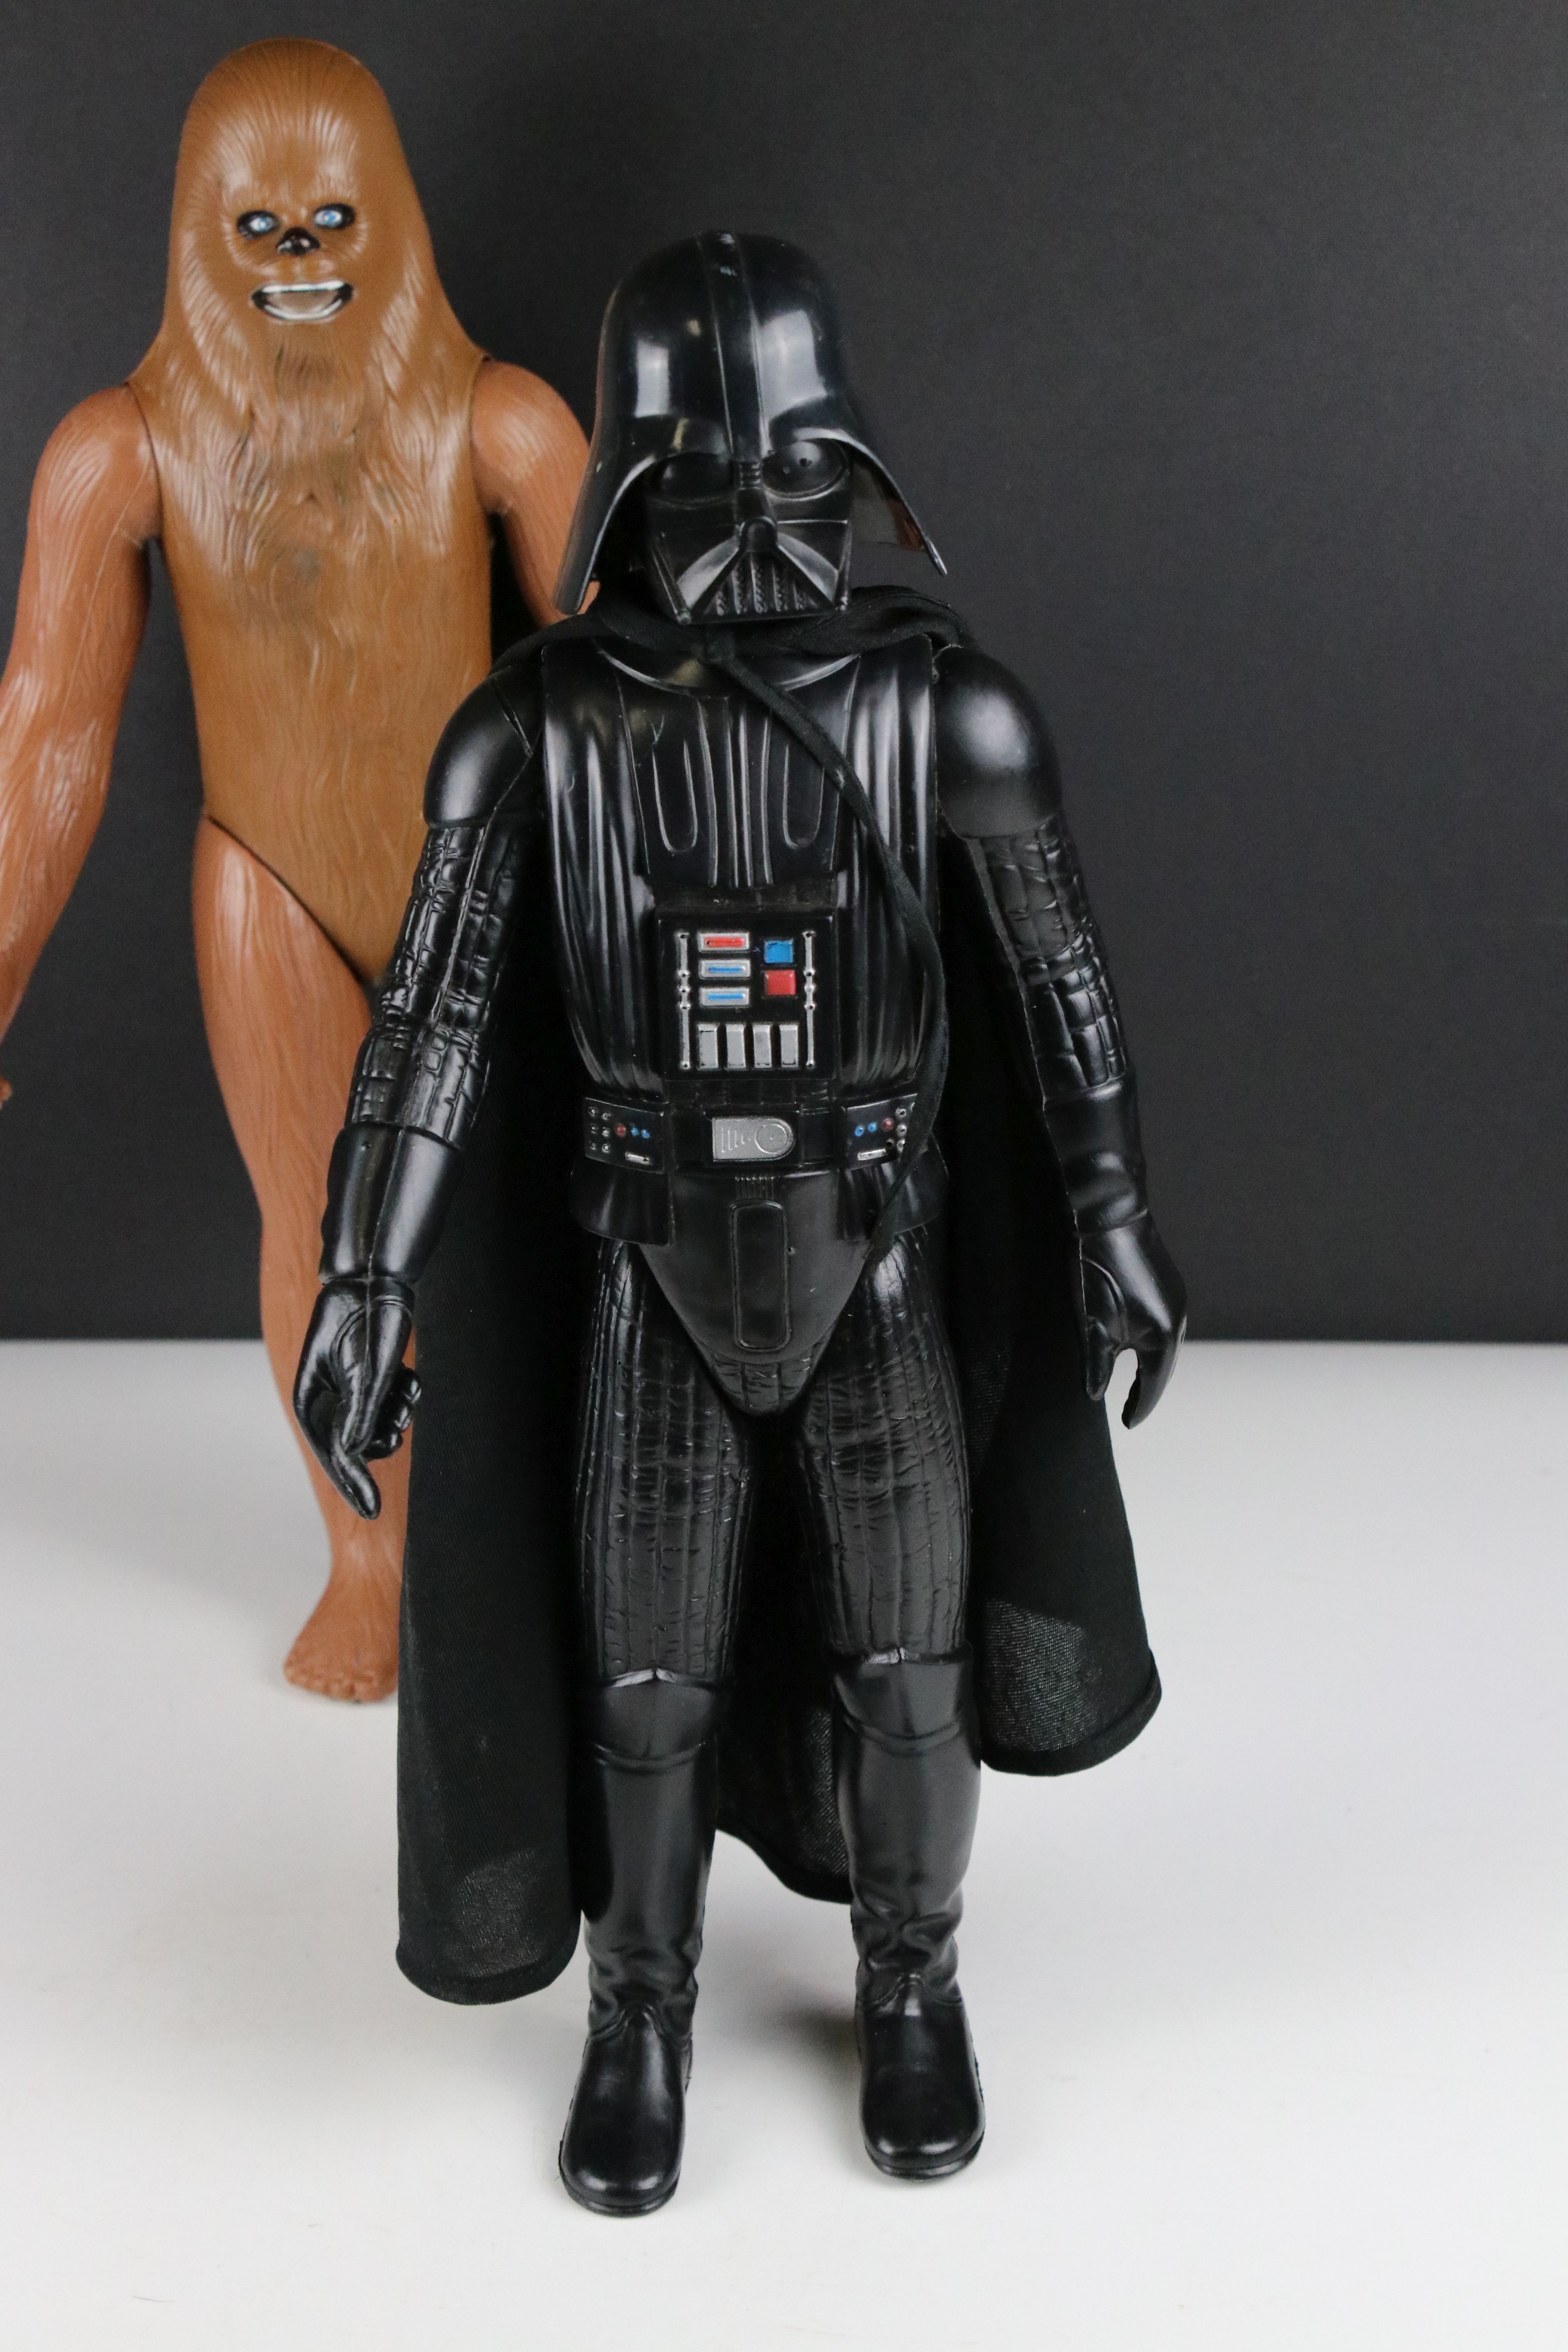 Seven Original Star Wars Kenner / General Mills 12" Action Figures including Luke Skywalker - Image 10 of 12